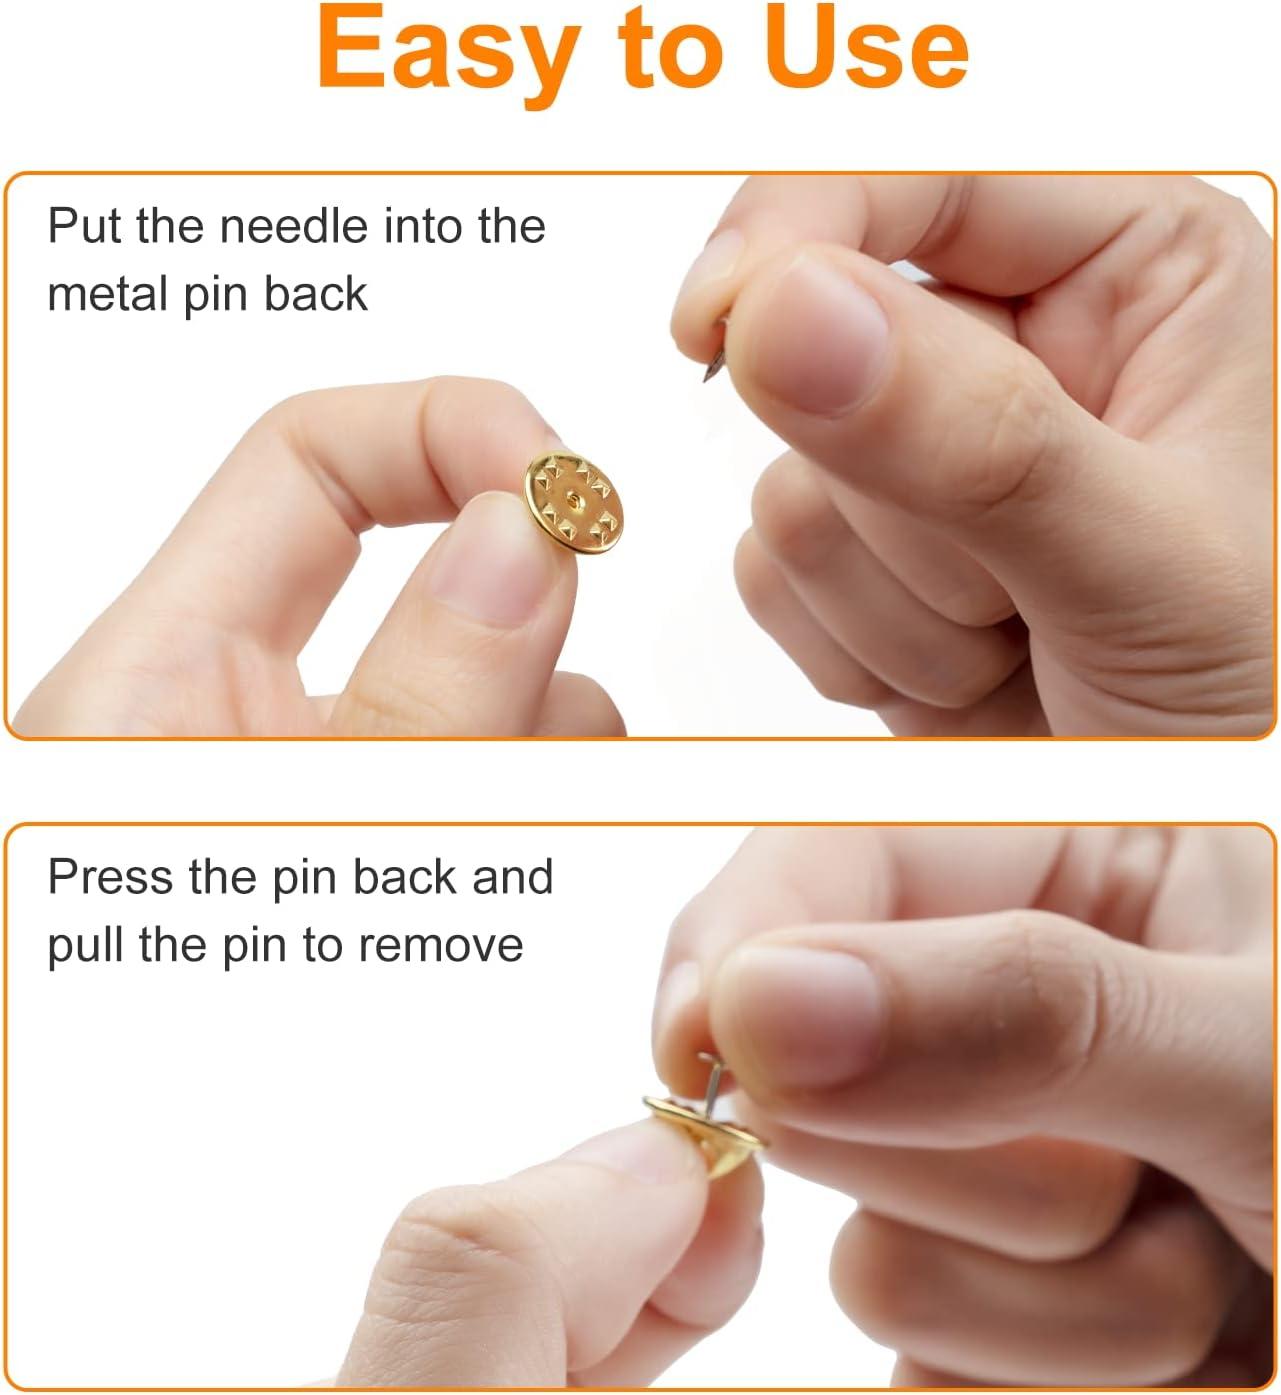 5 Metal Locking Pin Backs – REPPIN PINS